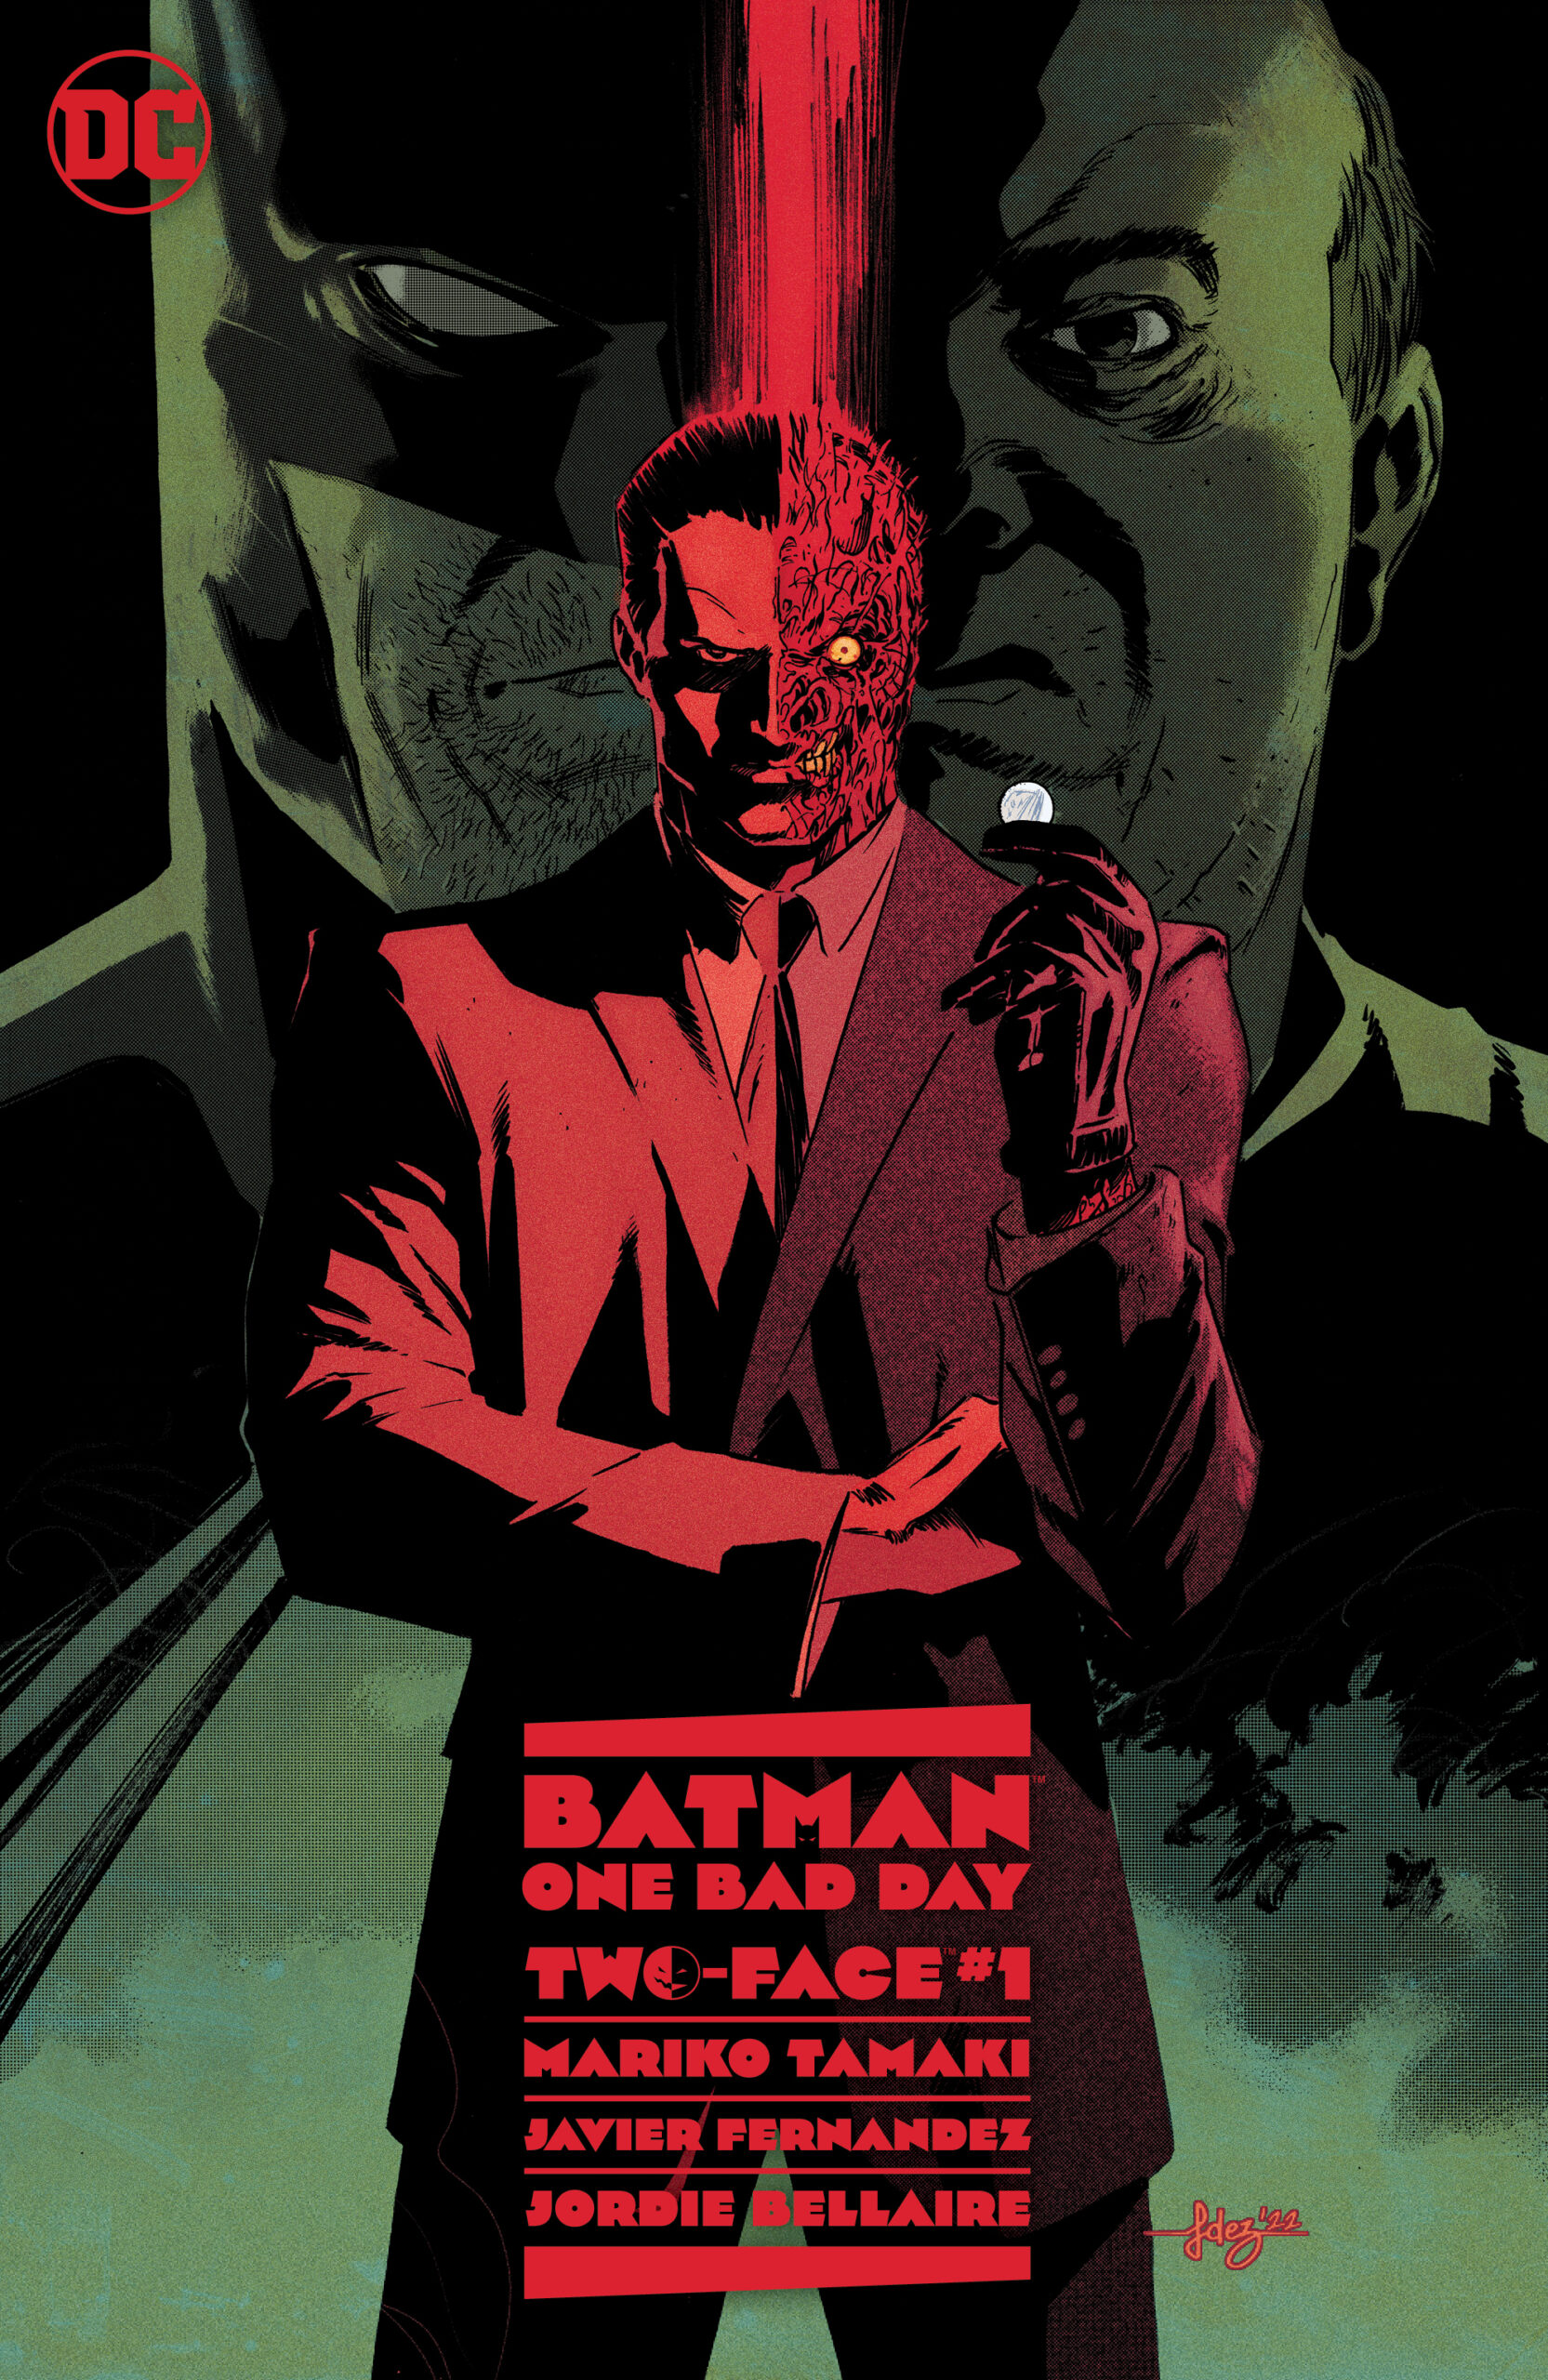 Batman - One Bad Day: Two-Face by Mariko Tamaki, Javier Fernandez & Jordie Bellaire